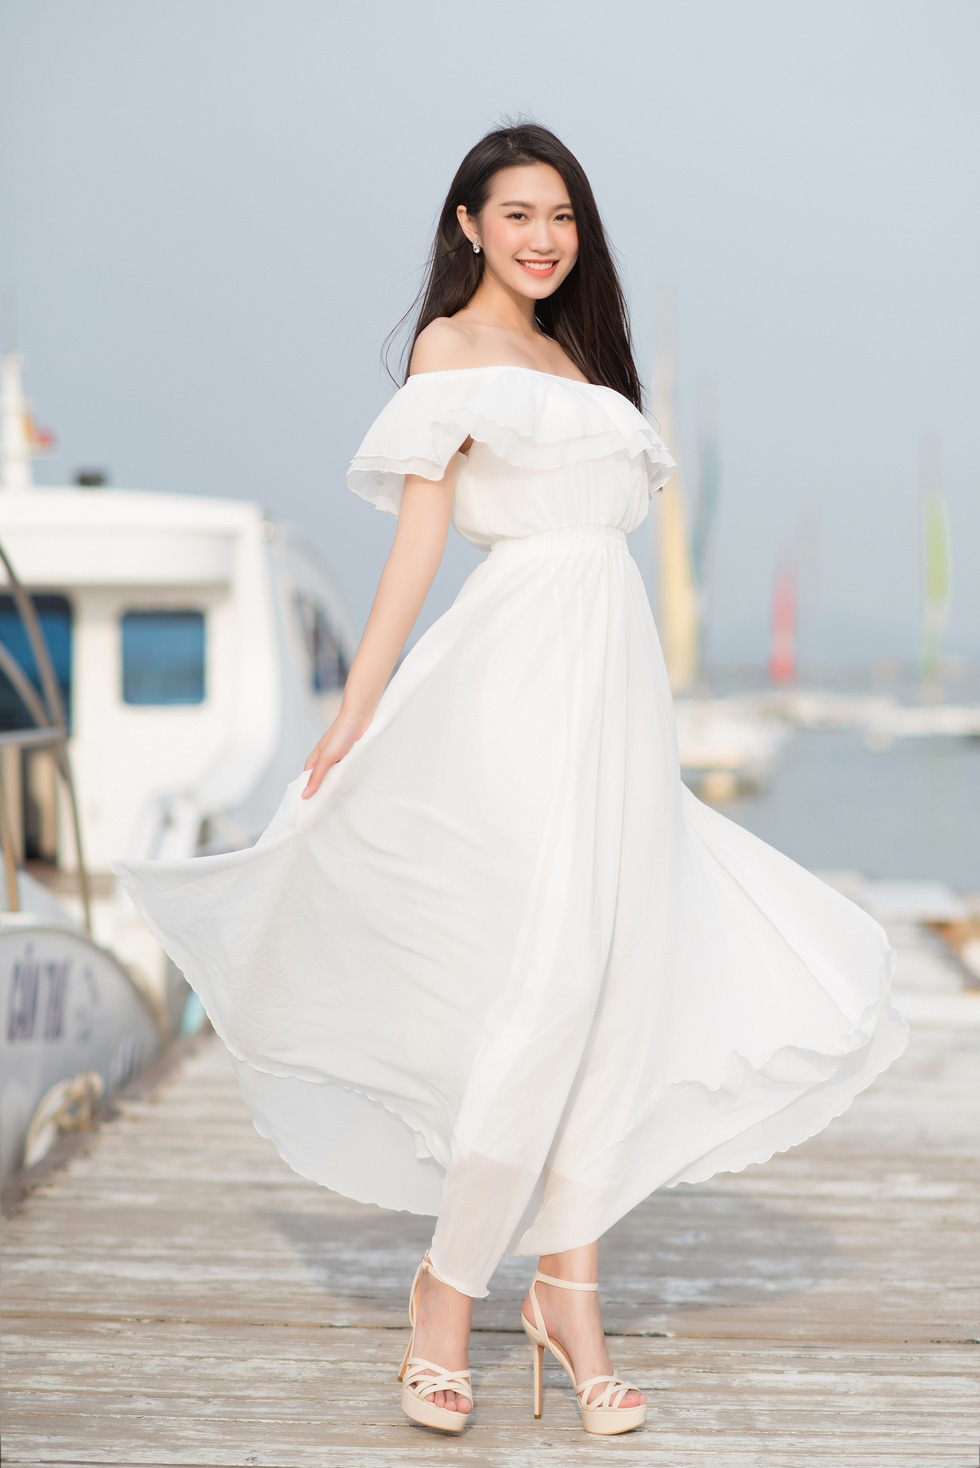 Hoa hậu Việt Nam 2020: 10 thí sinh được chú ý nhất trước giờ G - Ảnh 2.